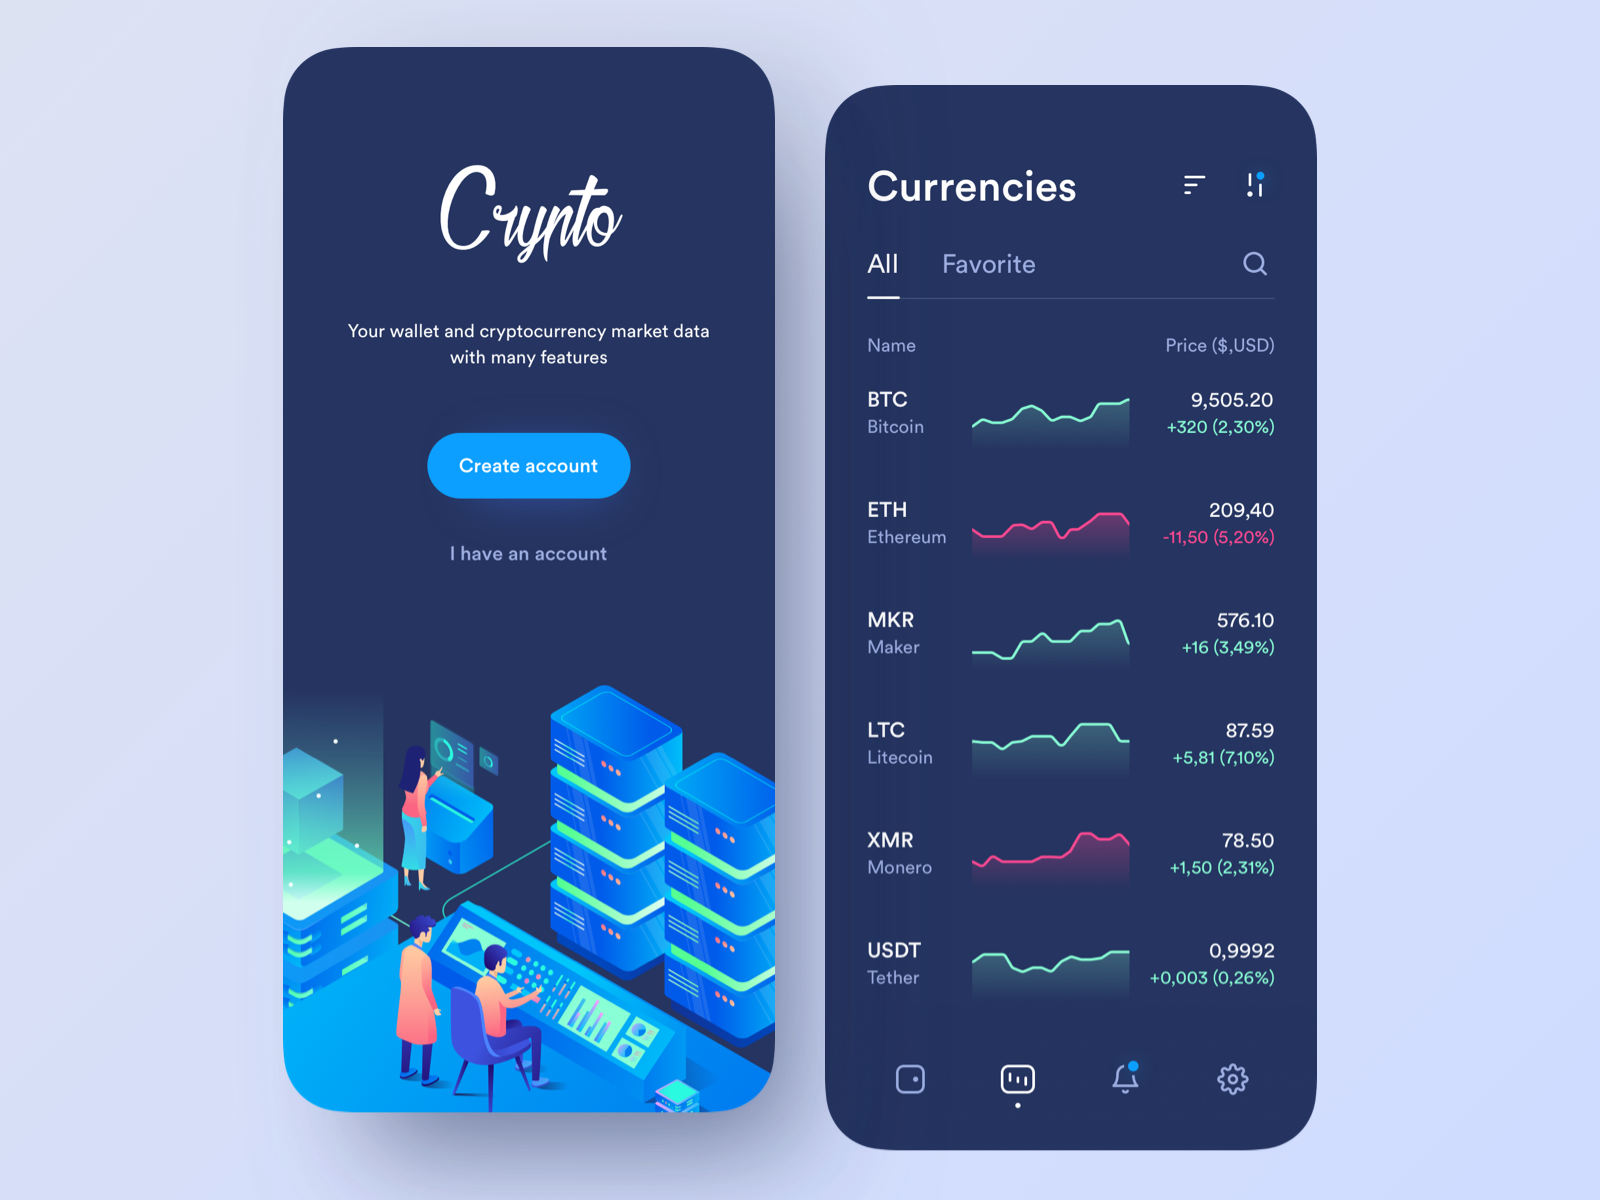 Crypto app by Alex Arutuynov 🤘 on Dribbble